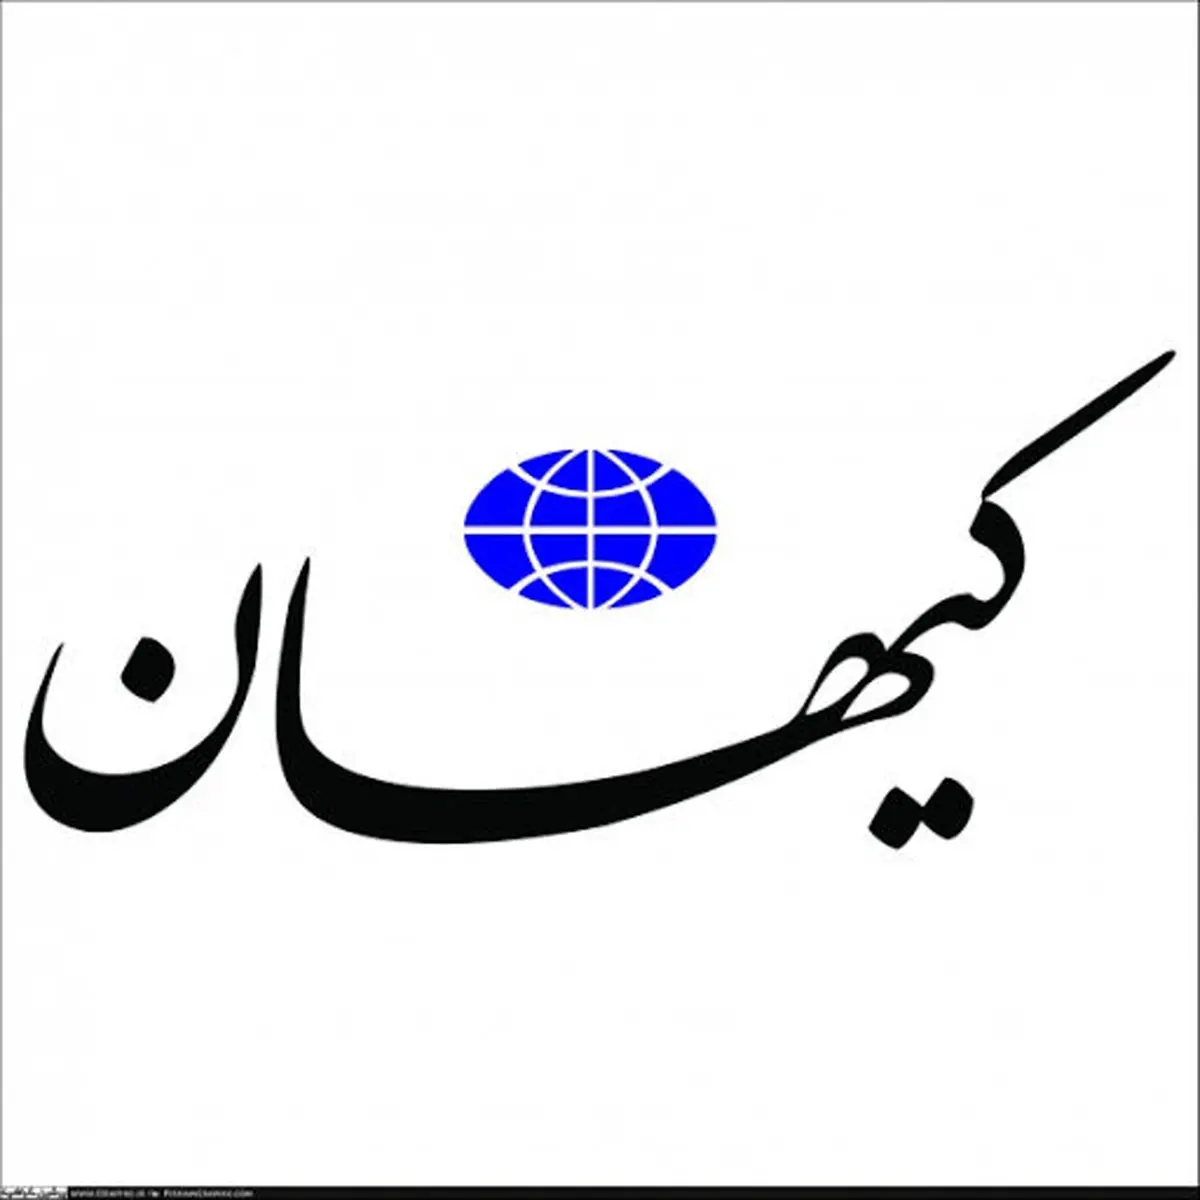 کیهان: اصلاح طلبان در آفت های فضای مجازی برای کودکان و نوجوانان سهیم هستند چون با طرح صیانت مخالفند